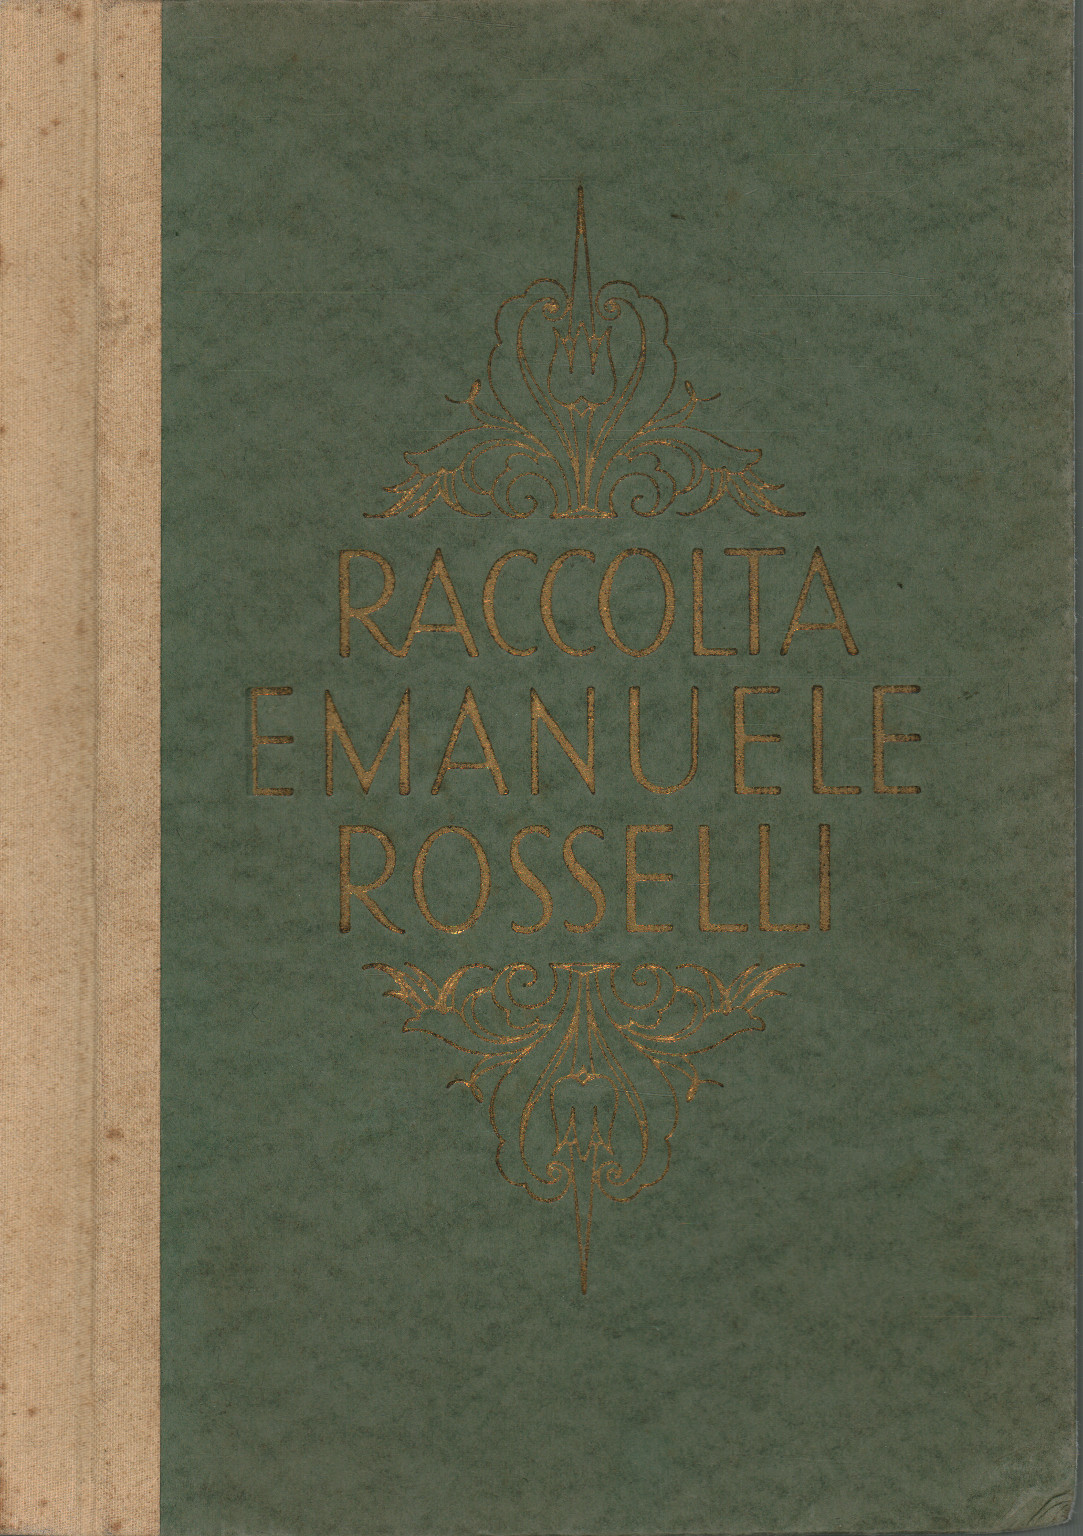 Raccolta Emanuele Rosselli di Viareggio, s.a.